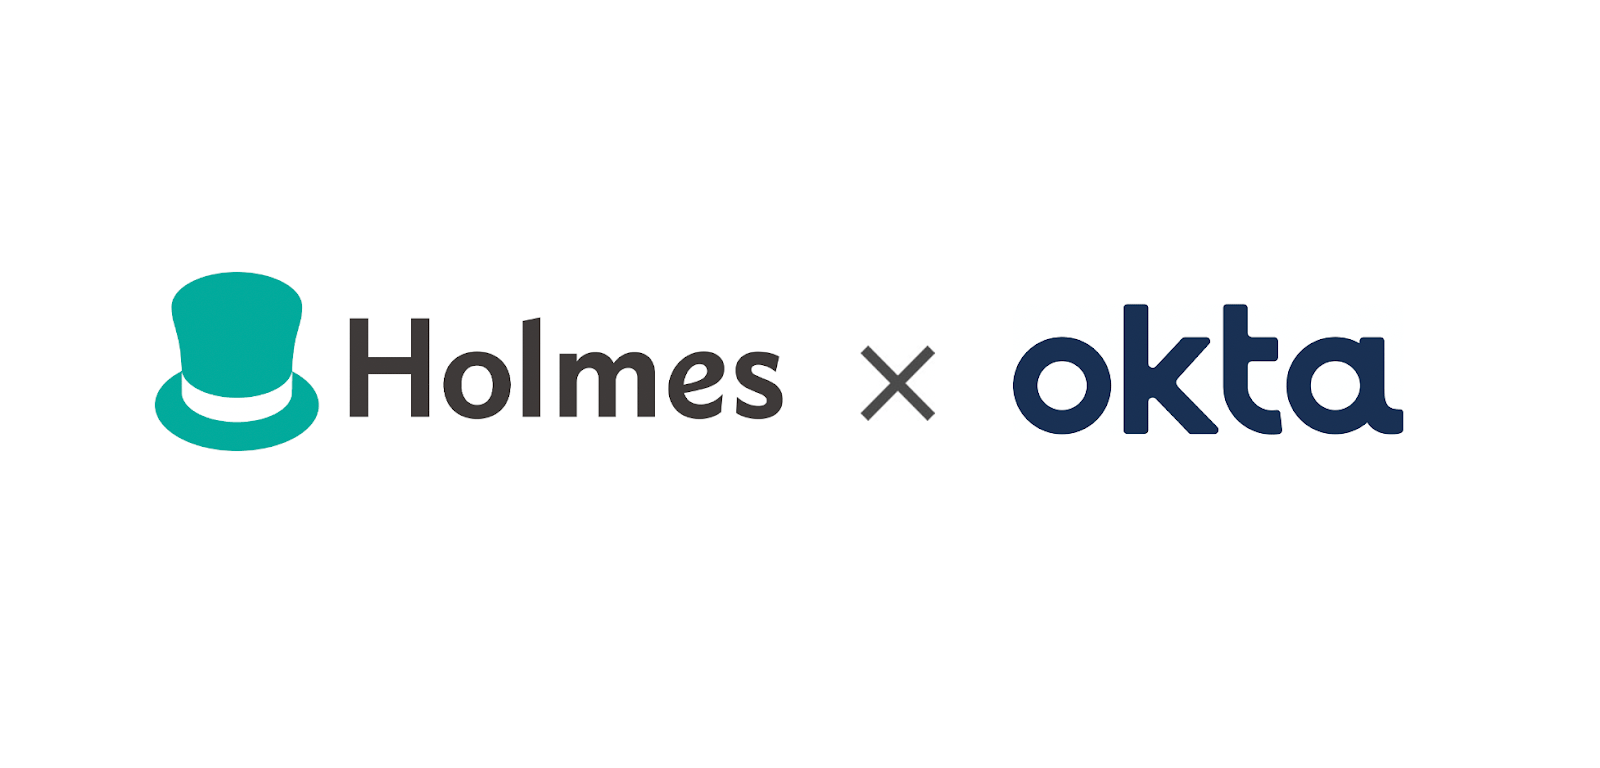 Holmes x Okta